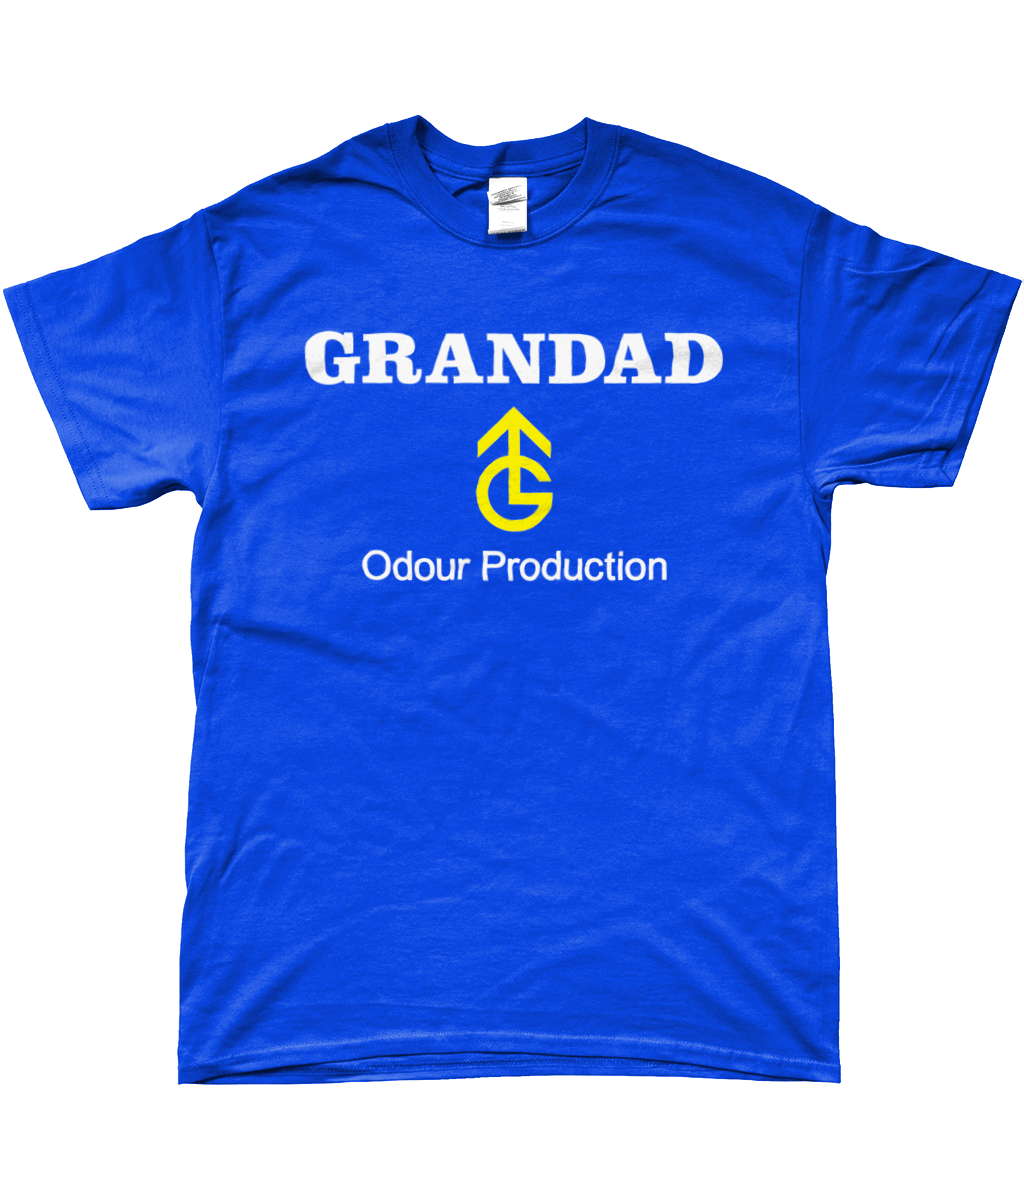 GRANDAD - Odour Production